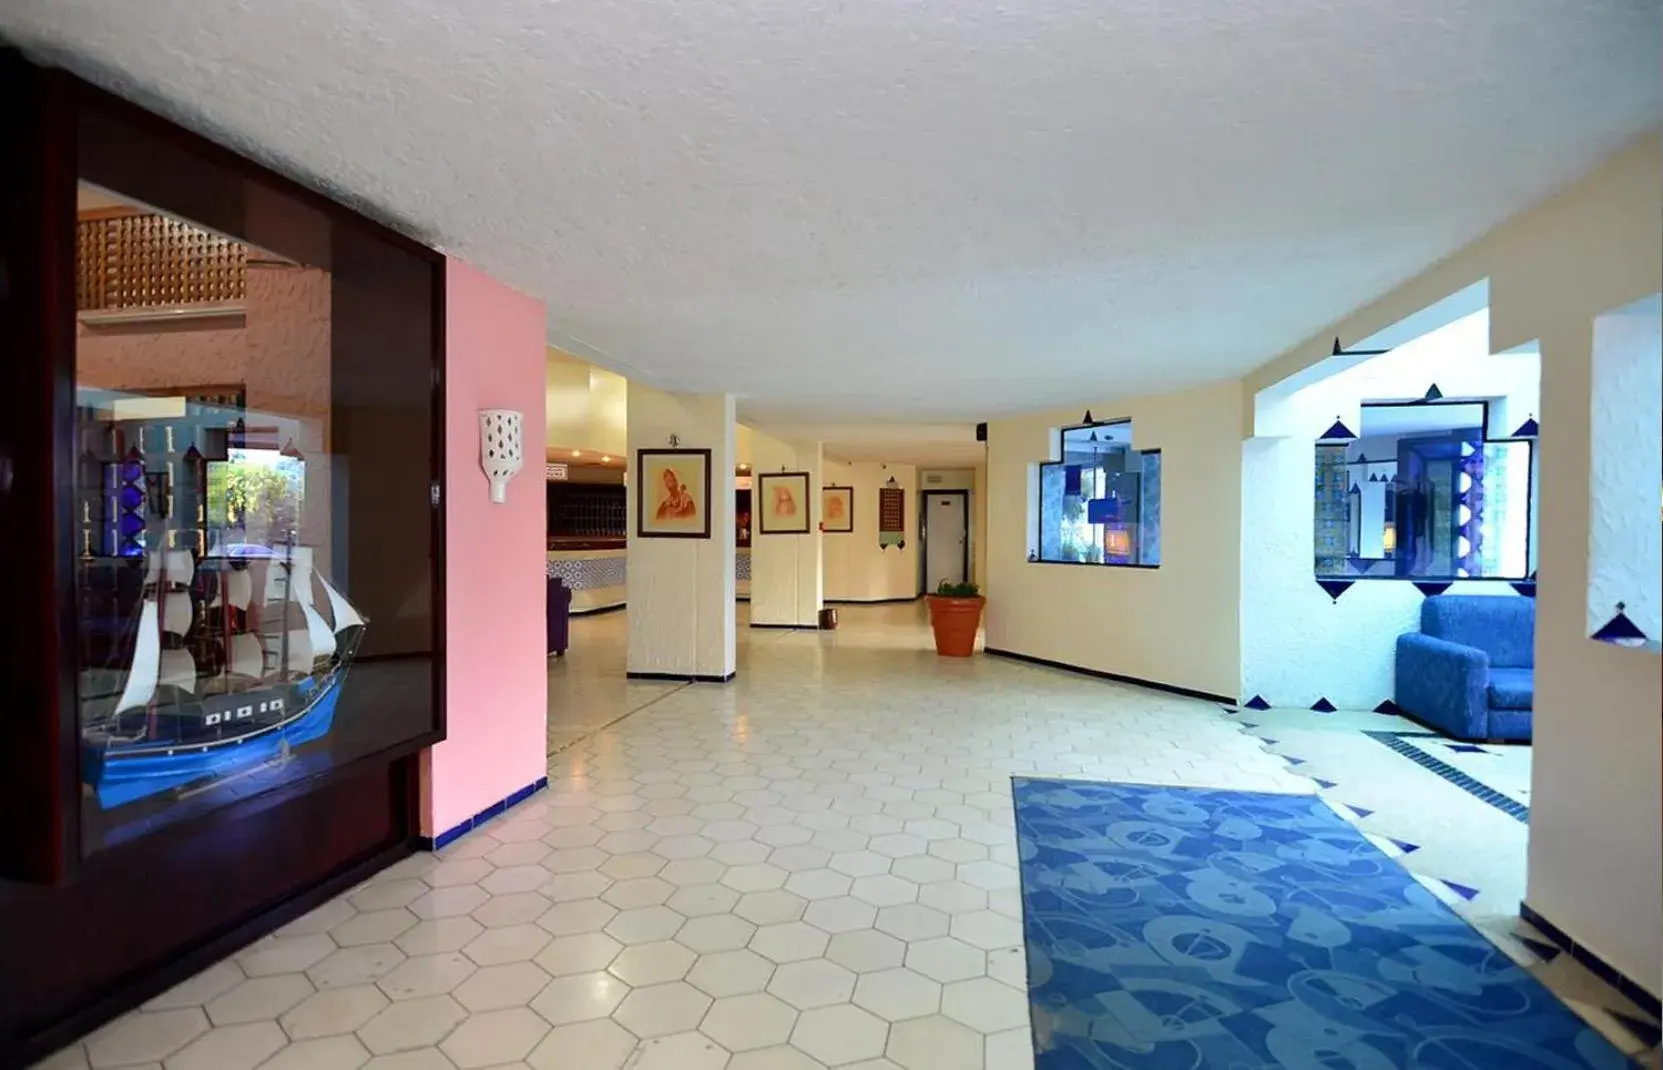 Lobby or reception in UMH Tarik Hotel